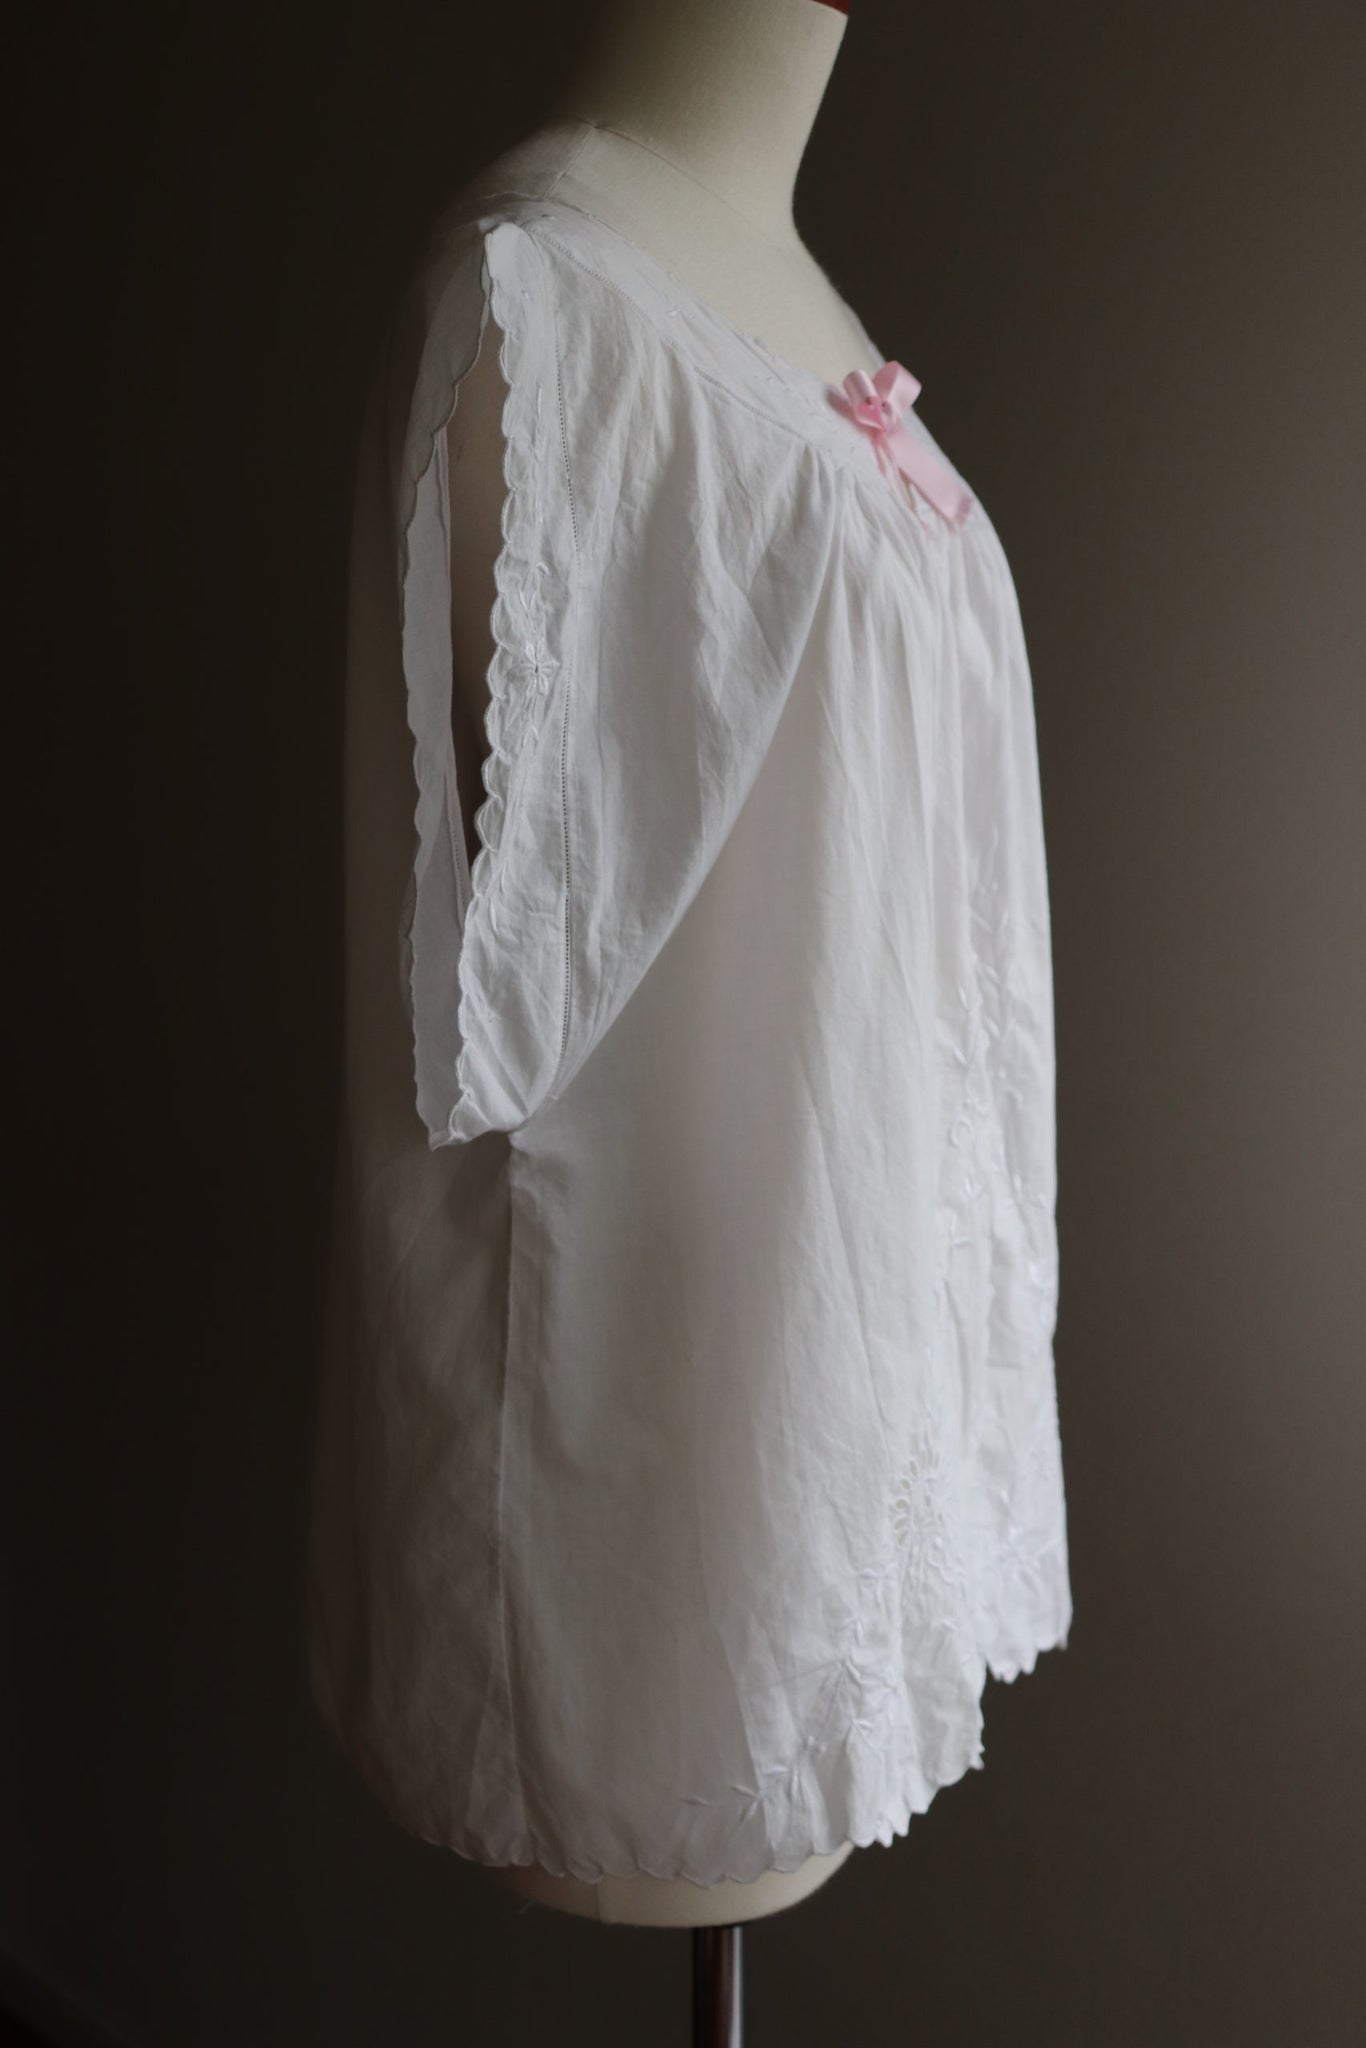 1910s French Cotton Vest Blouse